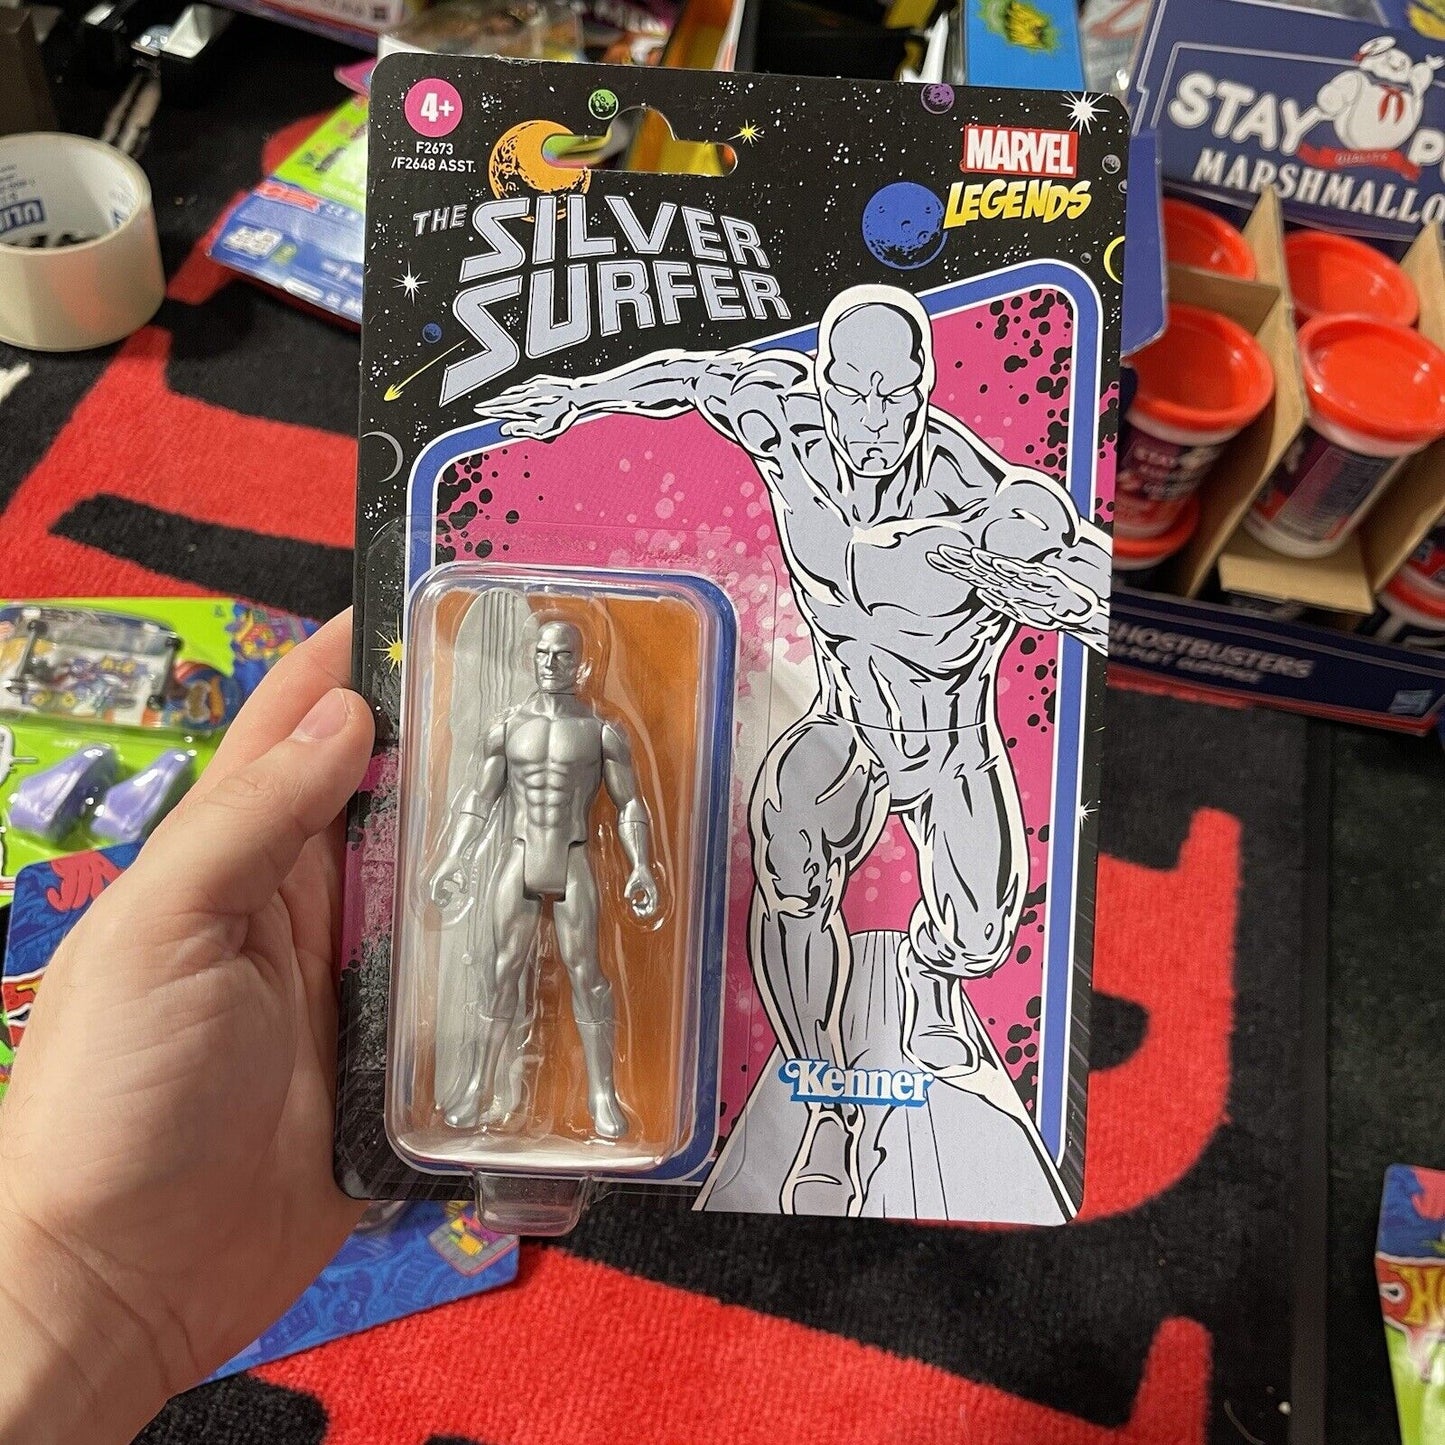 Marvel Legends Silver Surfer Kenner 3.75" Action Figure Unpunched Card Hasbro